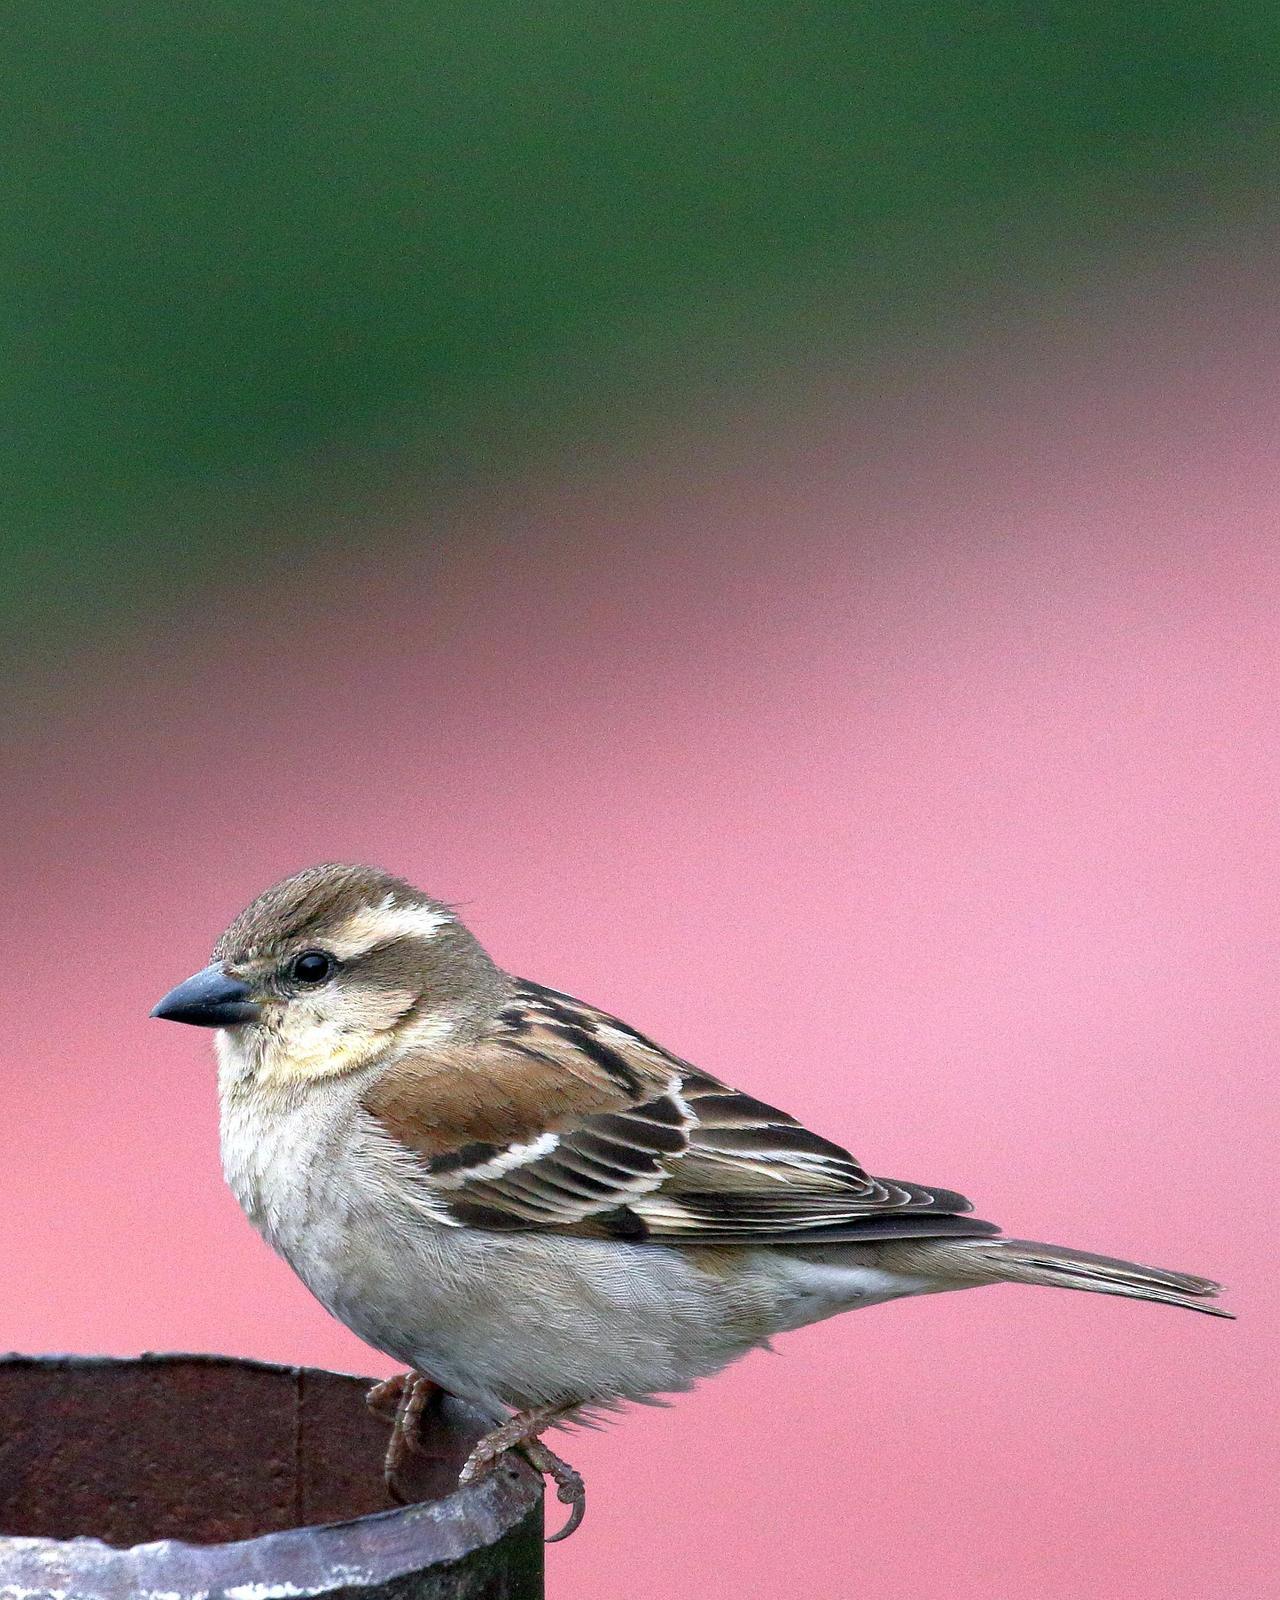 Russet Sparrow Photo by Rahul Kaushik